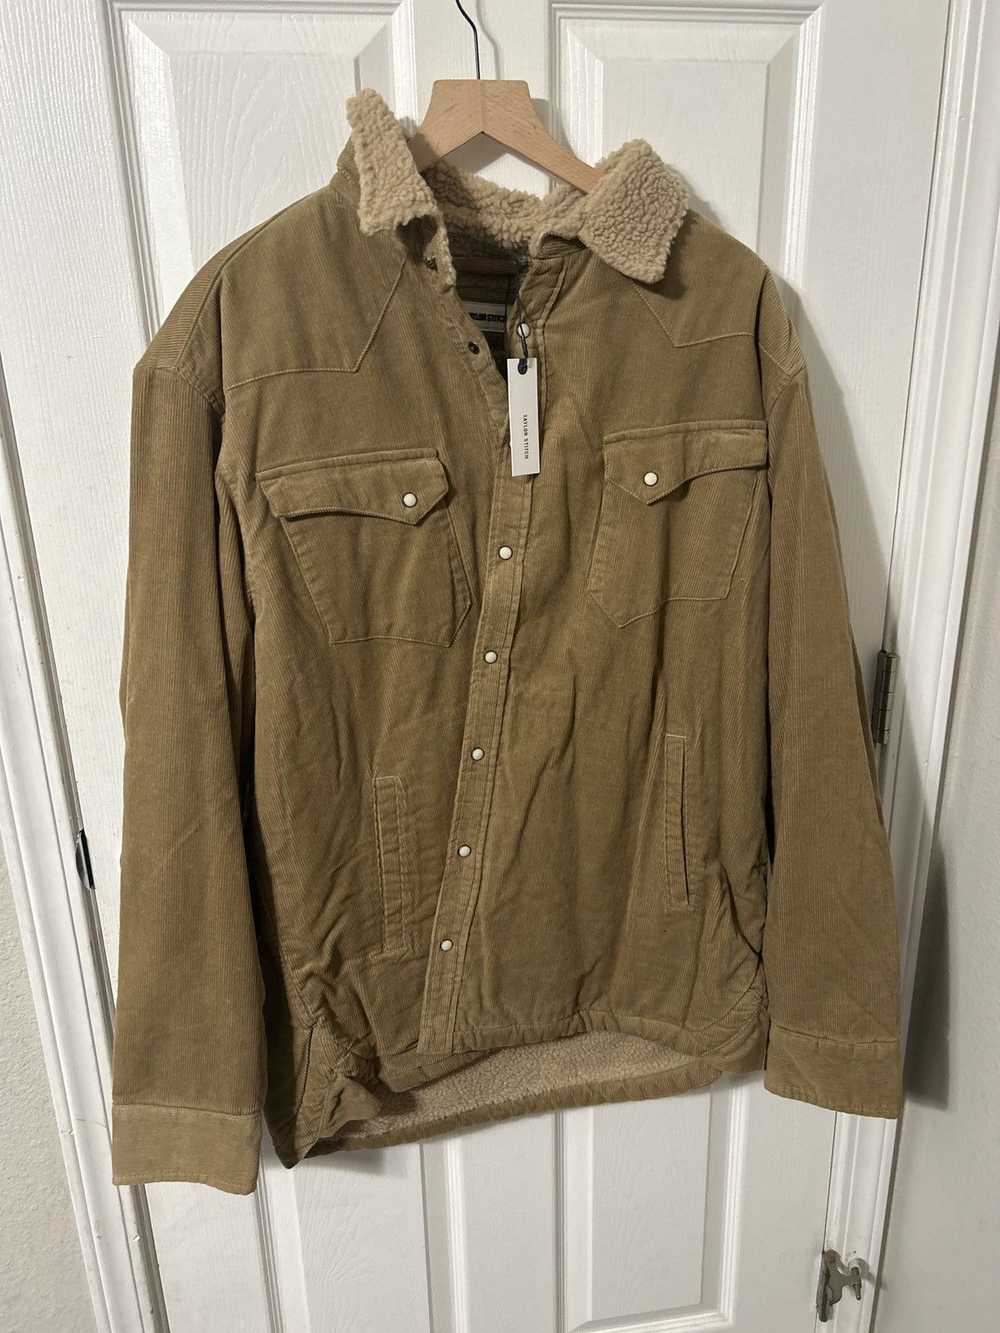 Taylor Stitch Wester shirt jacket corduroy - image 7